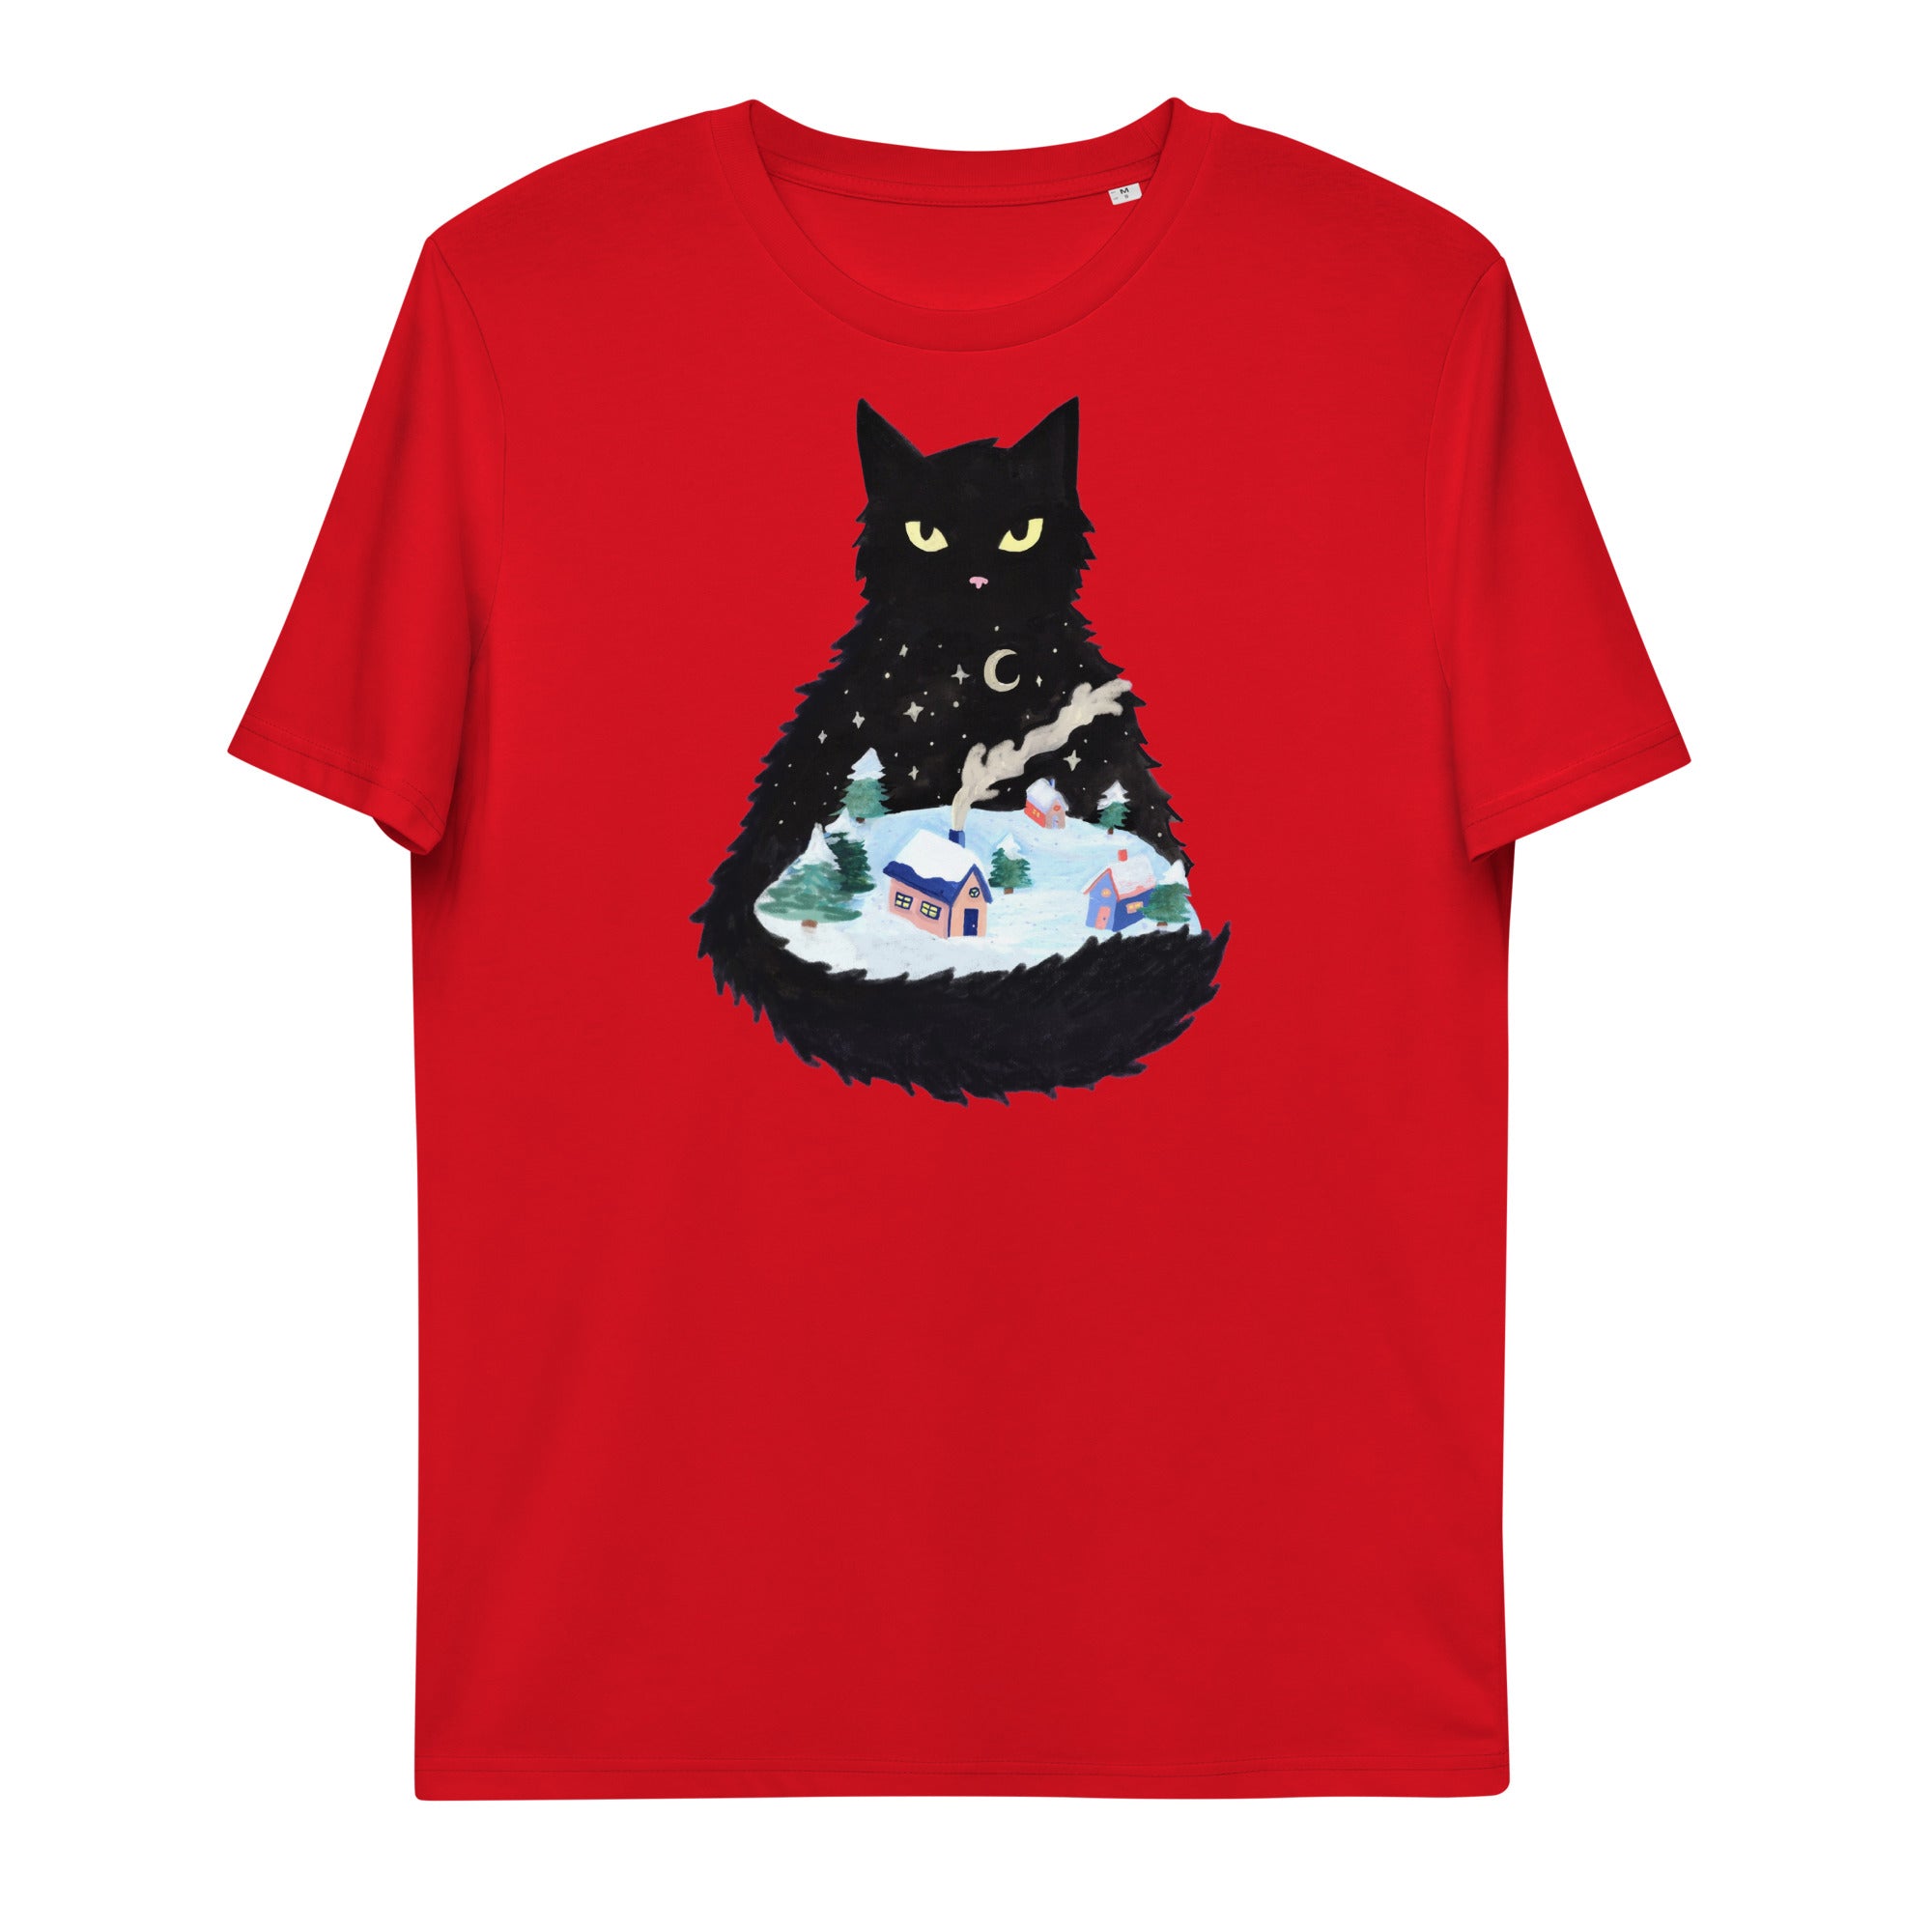 Yule Cat Shirt